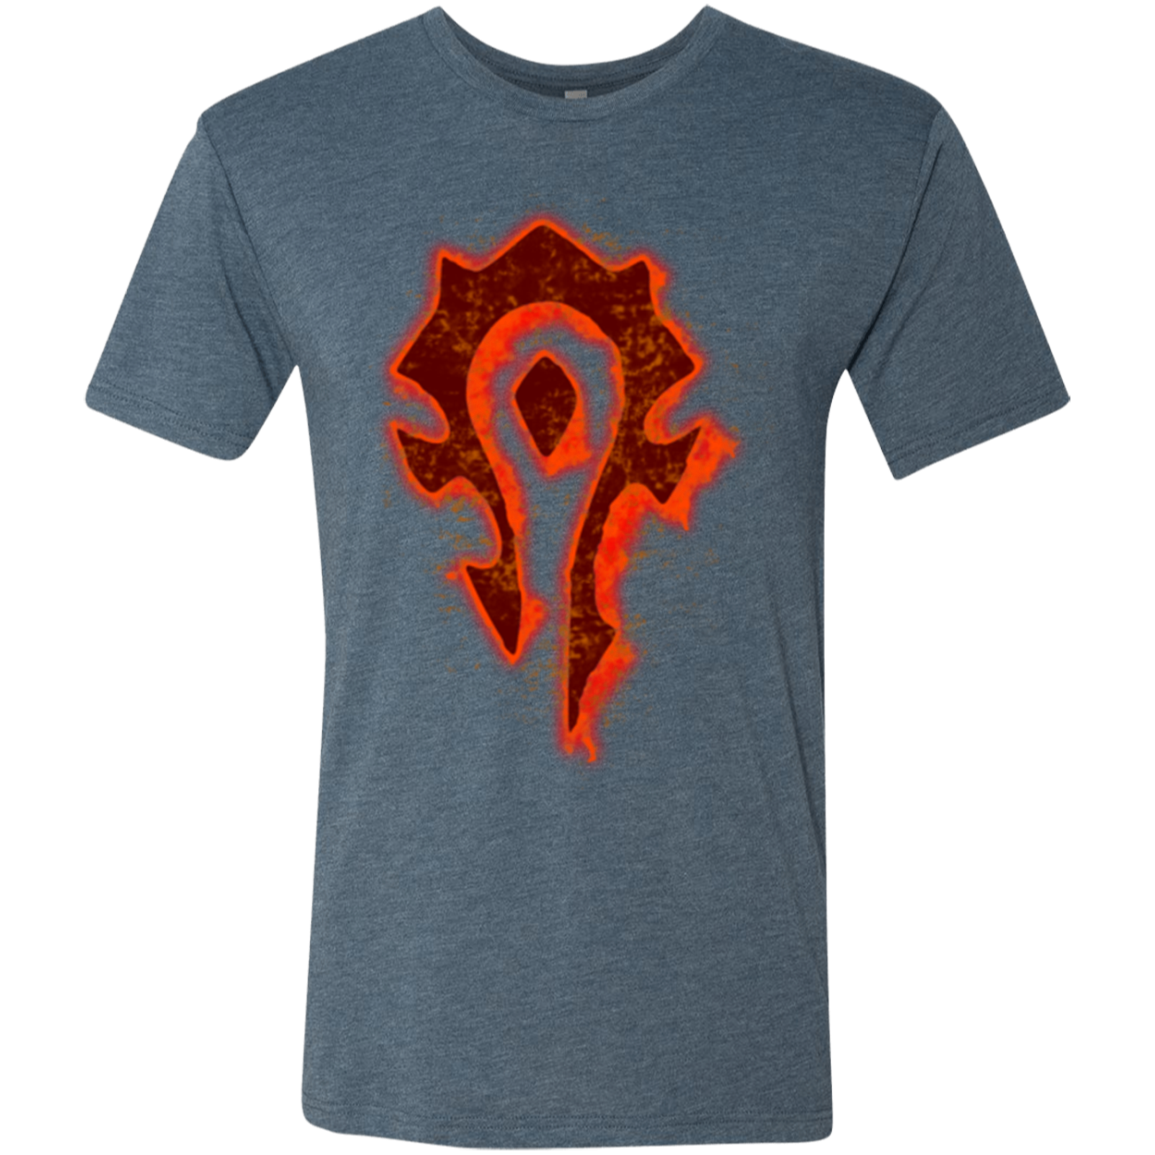 Flamecraft Men's Triblend T-Shirt